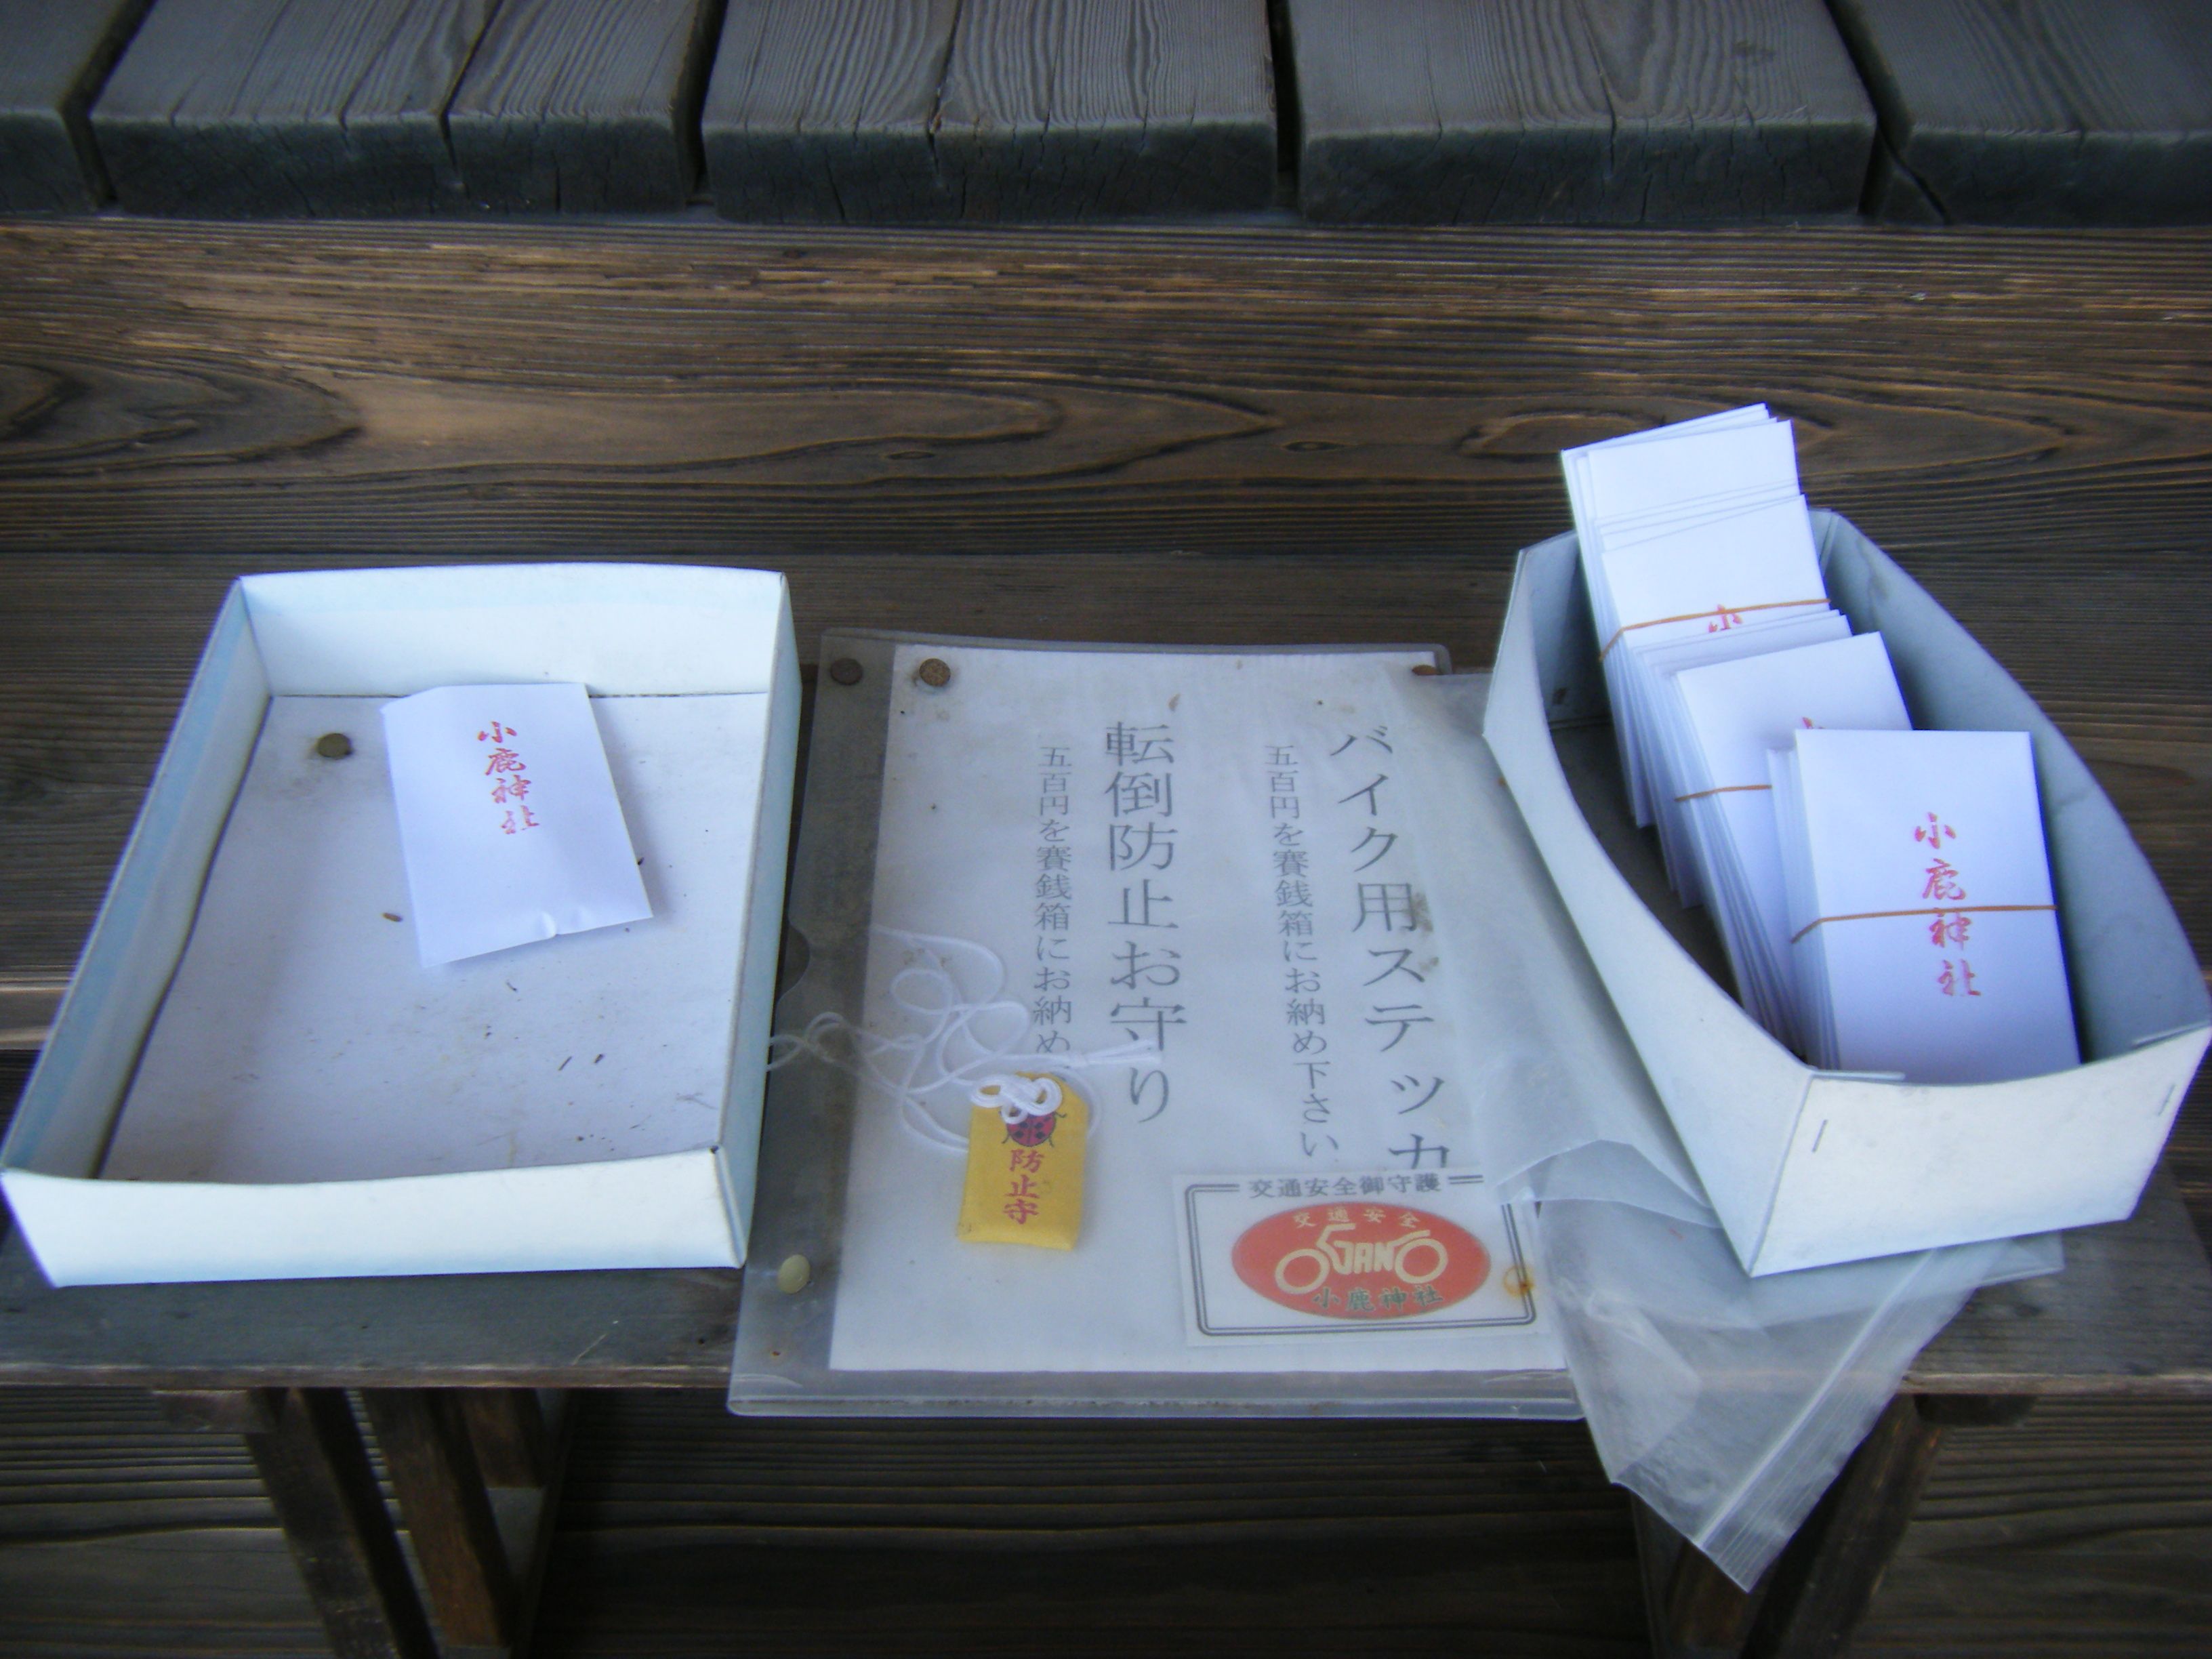 小鹿神社訪問 おっさんライダーのブログ Adv150 楽天ブログ